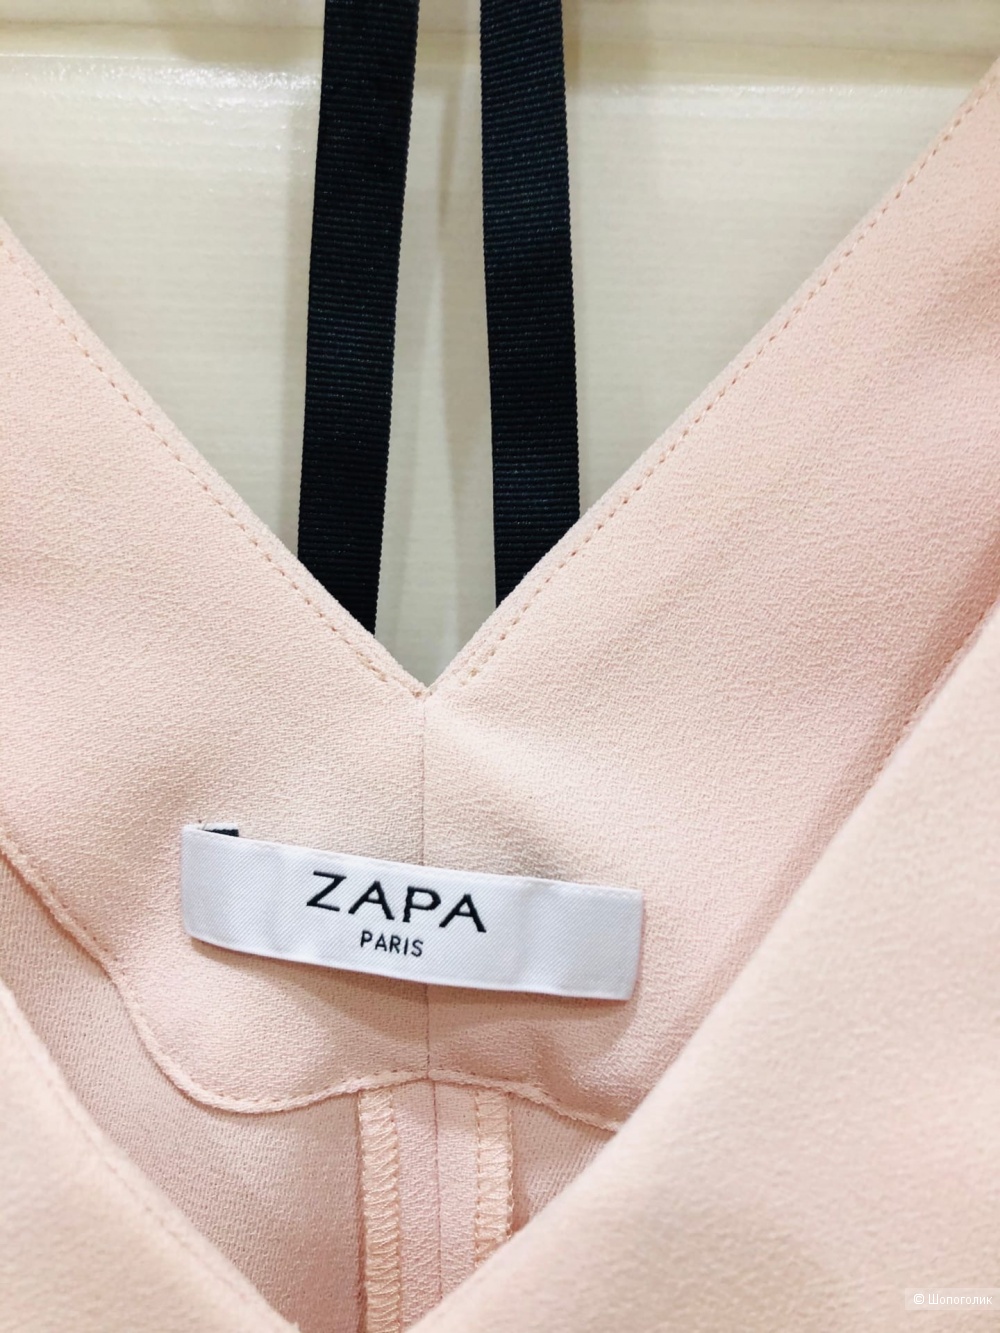 Блузка ZAPA Paris . Размер S-M.